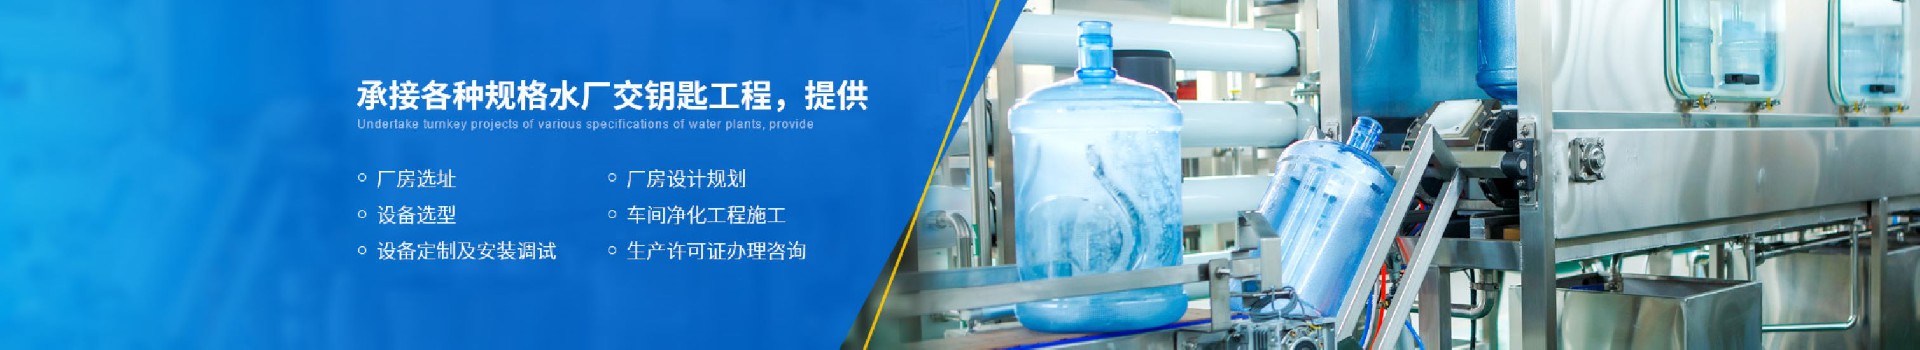 武汉川谷环保科技有限公司-武汉纯水设备厂家 (PC+WAP)-纯净水设备生产销售